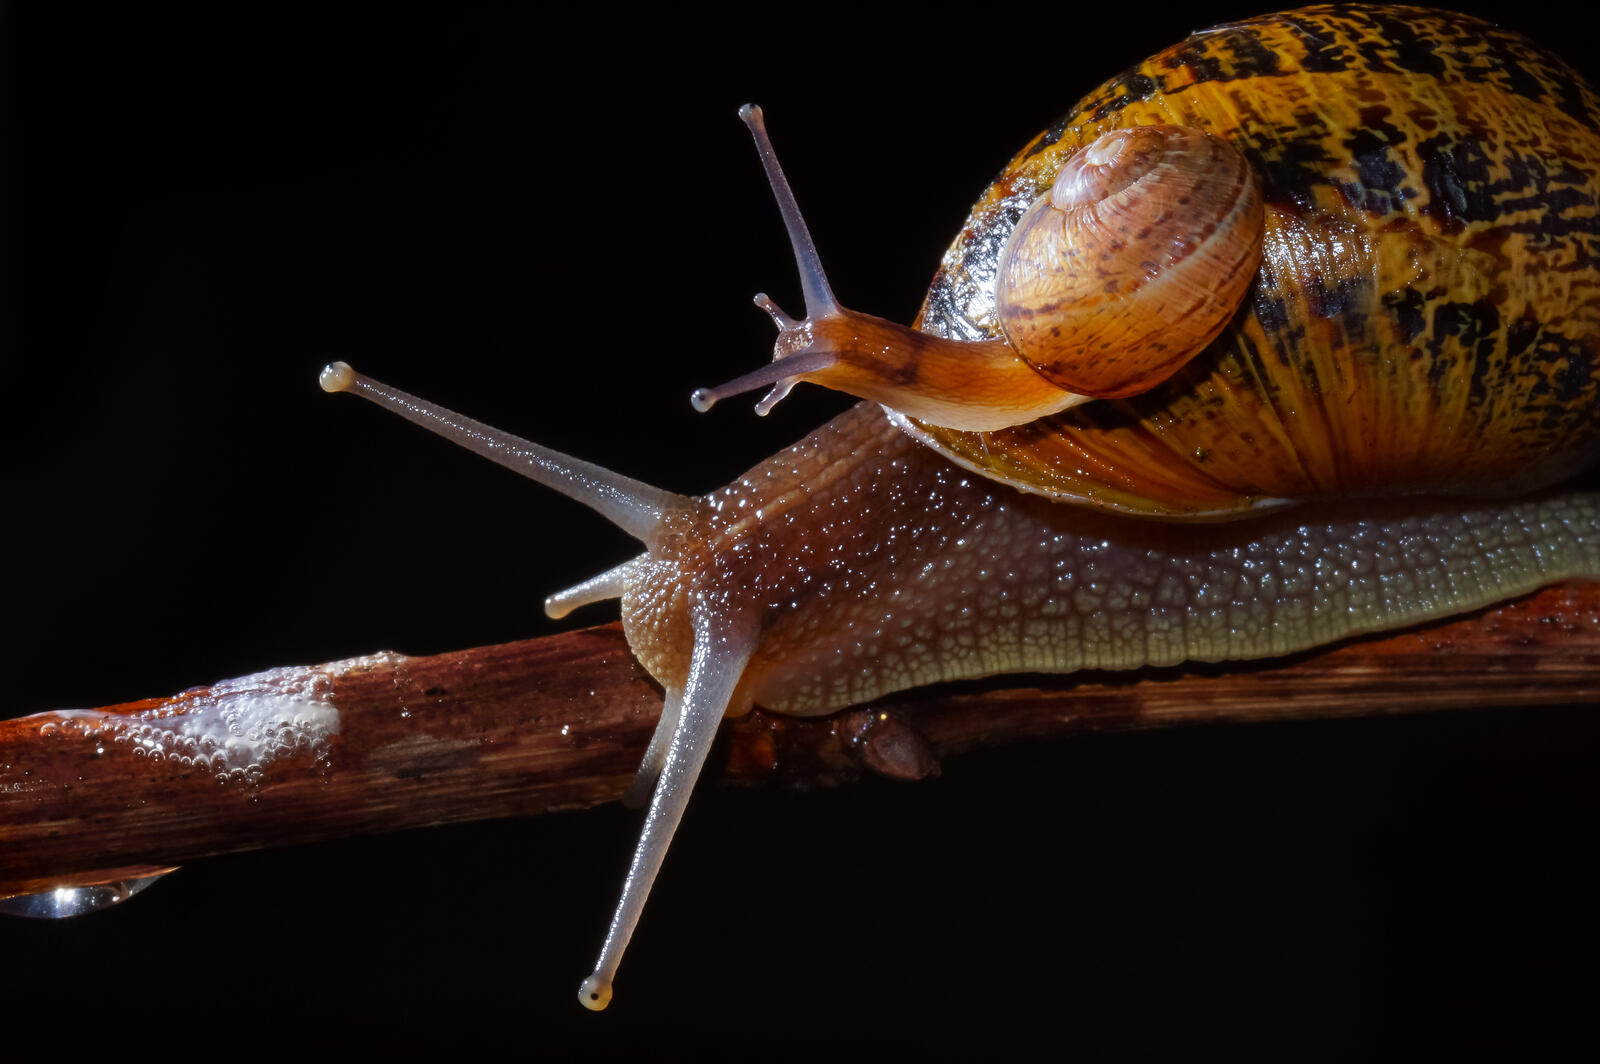 免费照片蜗牛壳上有只小蜗牛